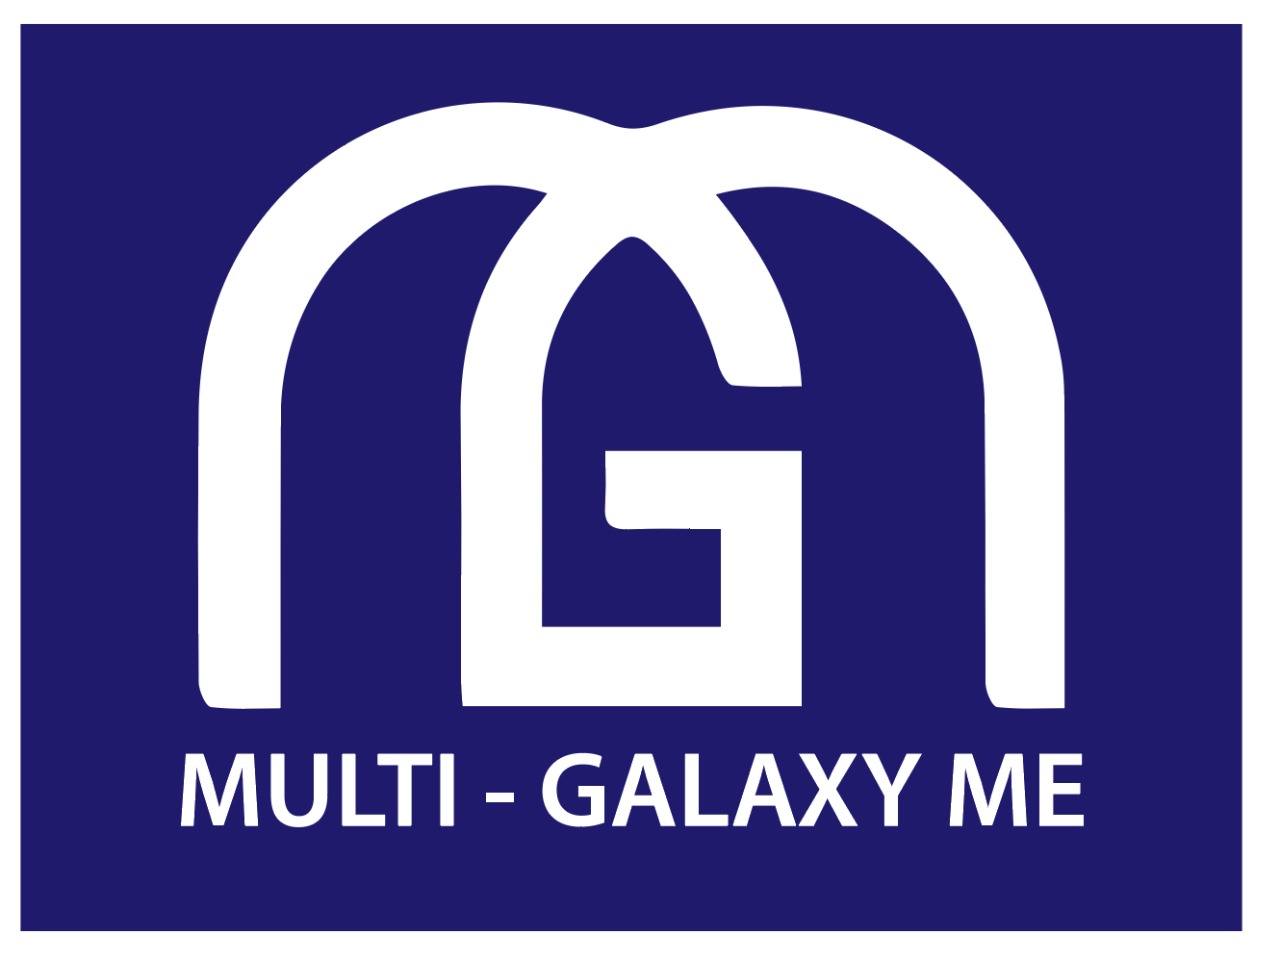 Multi-Galaxy Middle East LLC